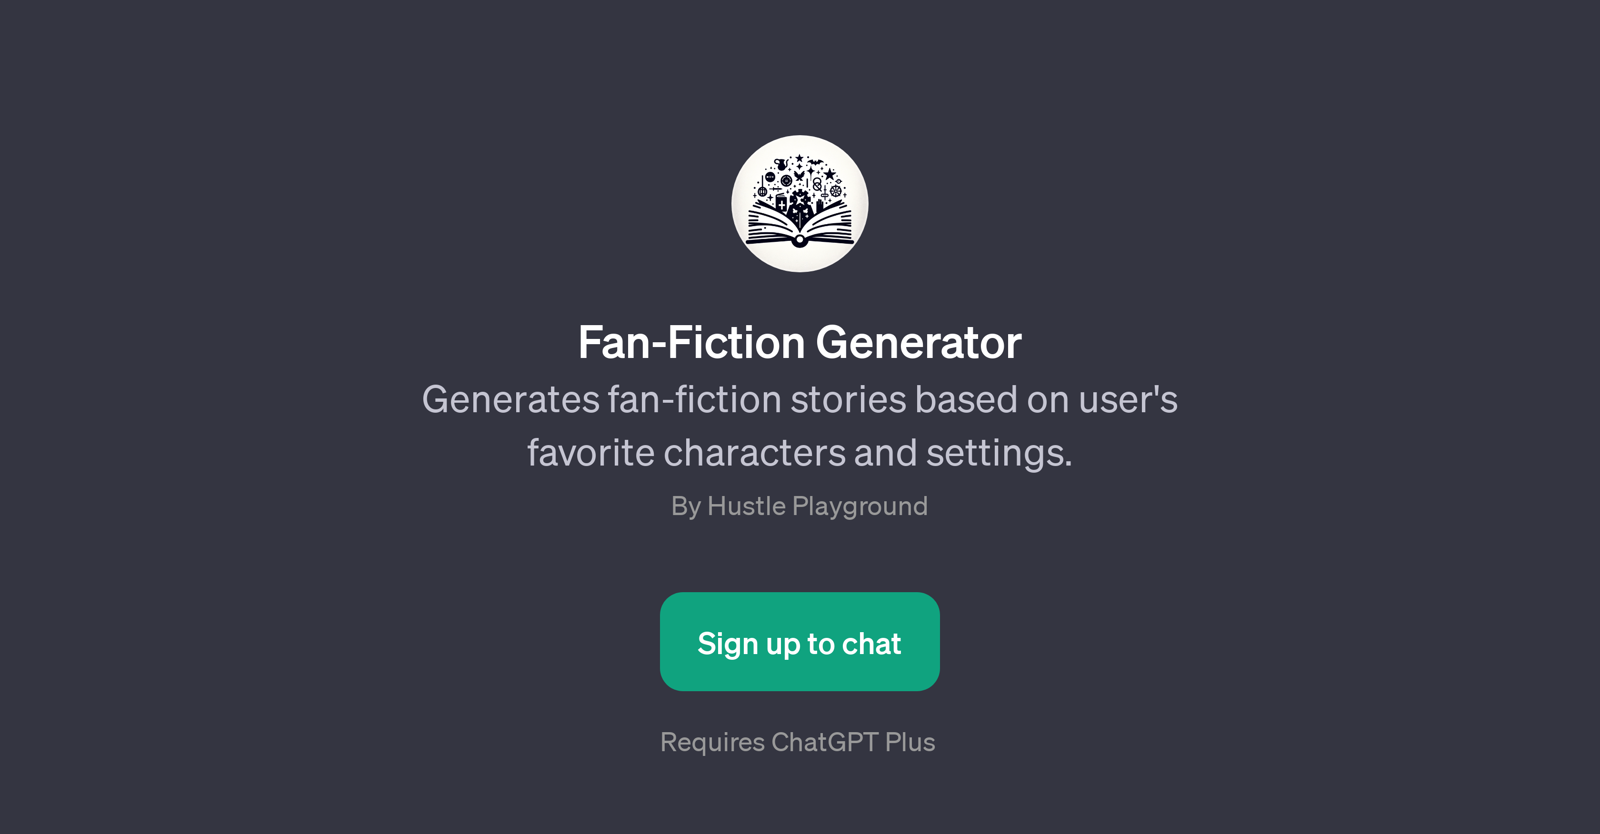 Fan-Fiction Generator website